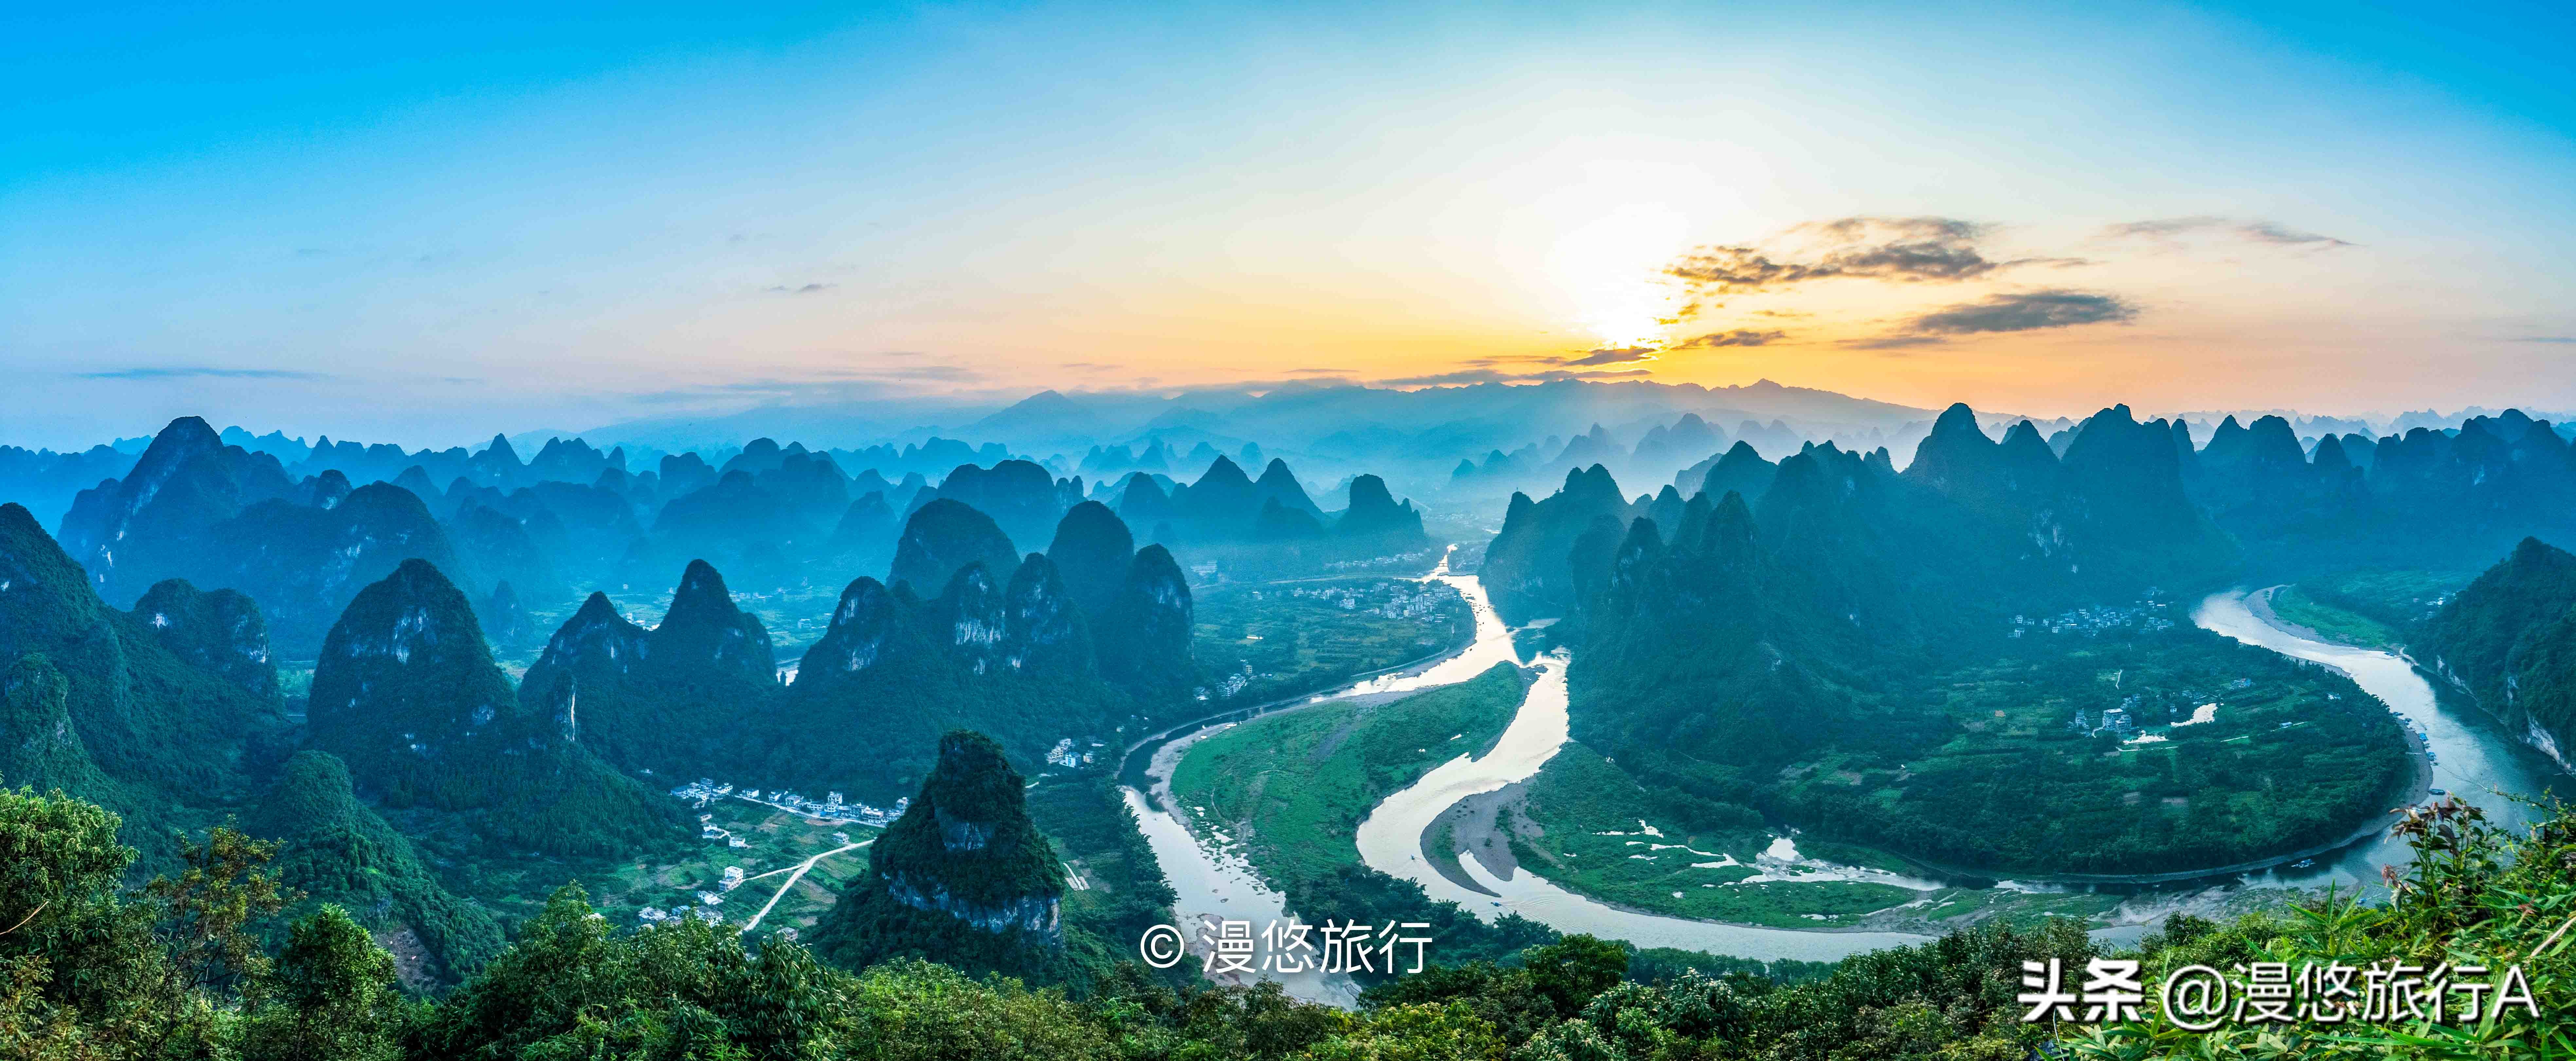 中國最美山水不在桂林市，藏在興坪鎮的山水才是資深旅行者的天堂